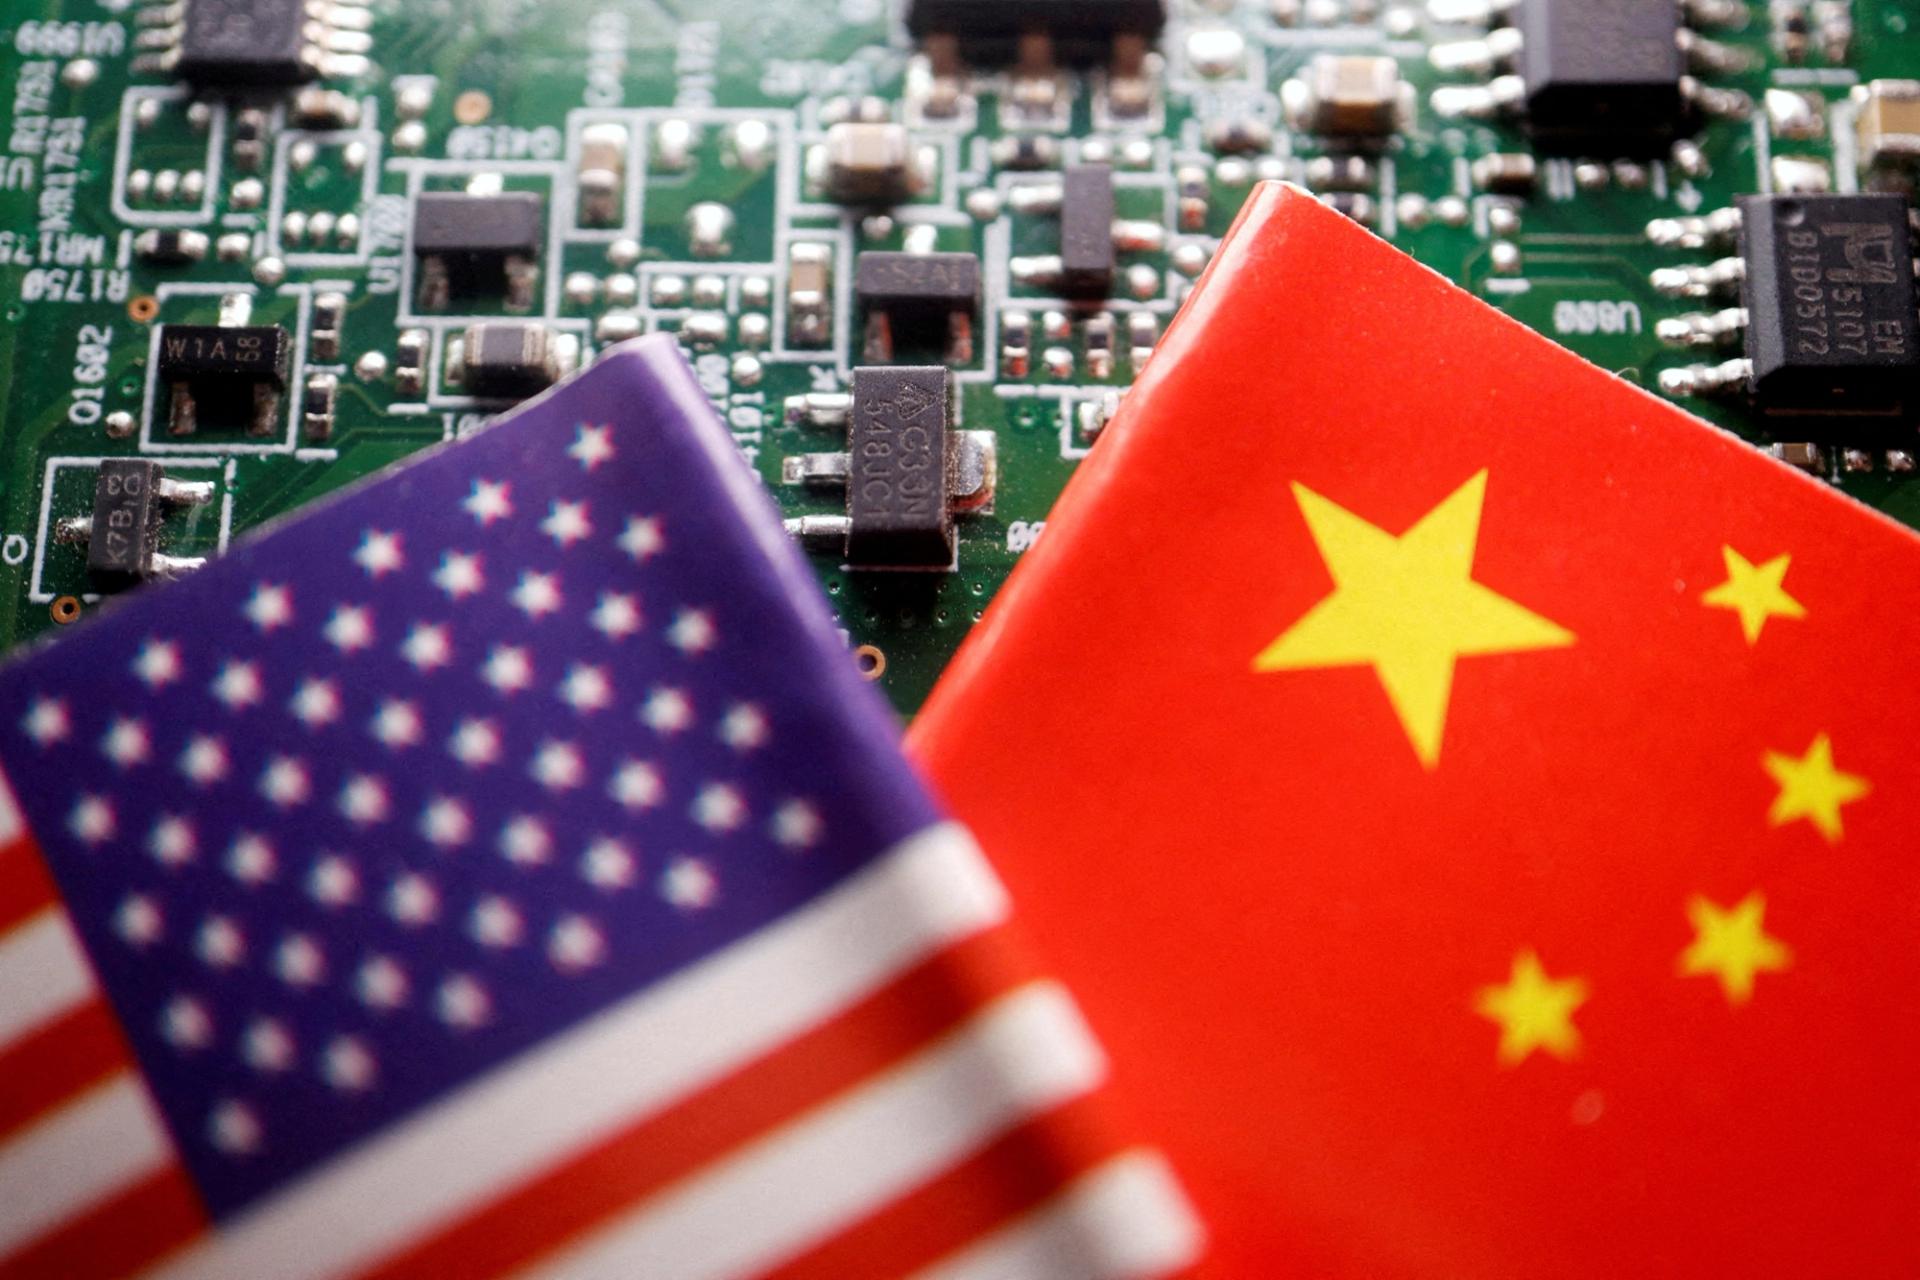 China-US chip trade war